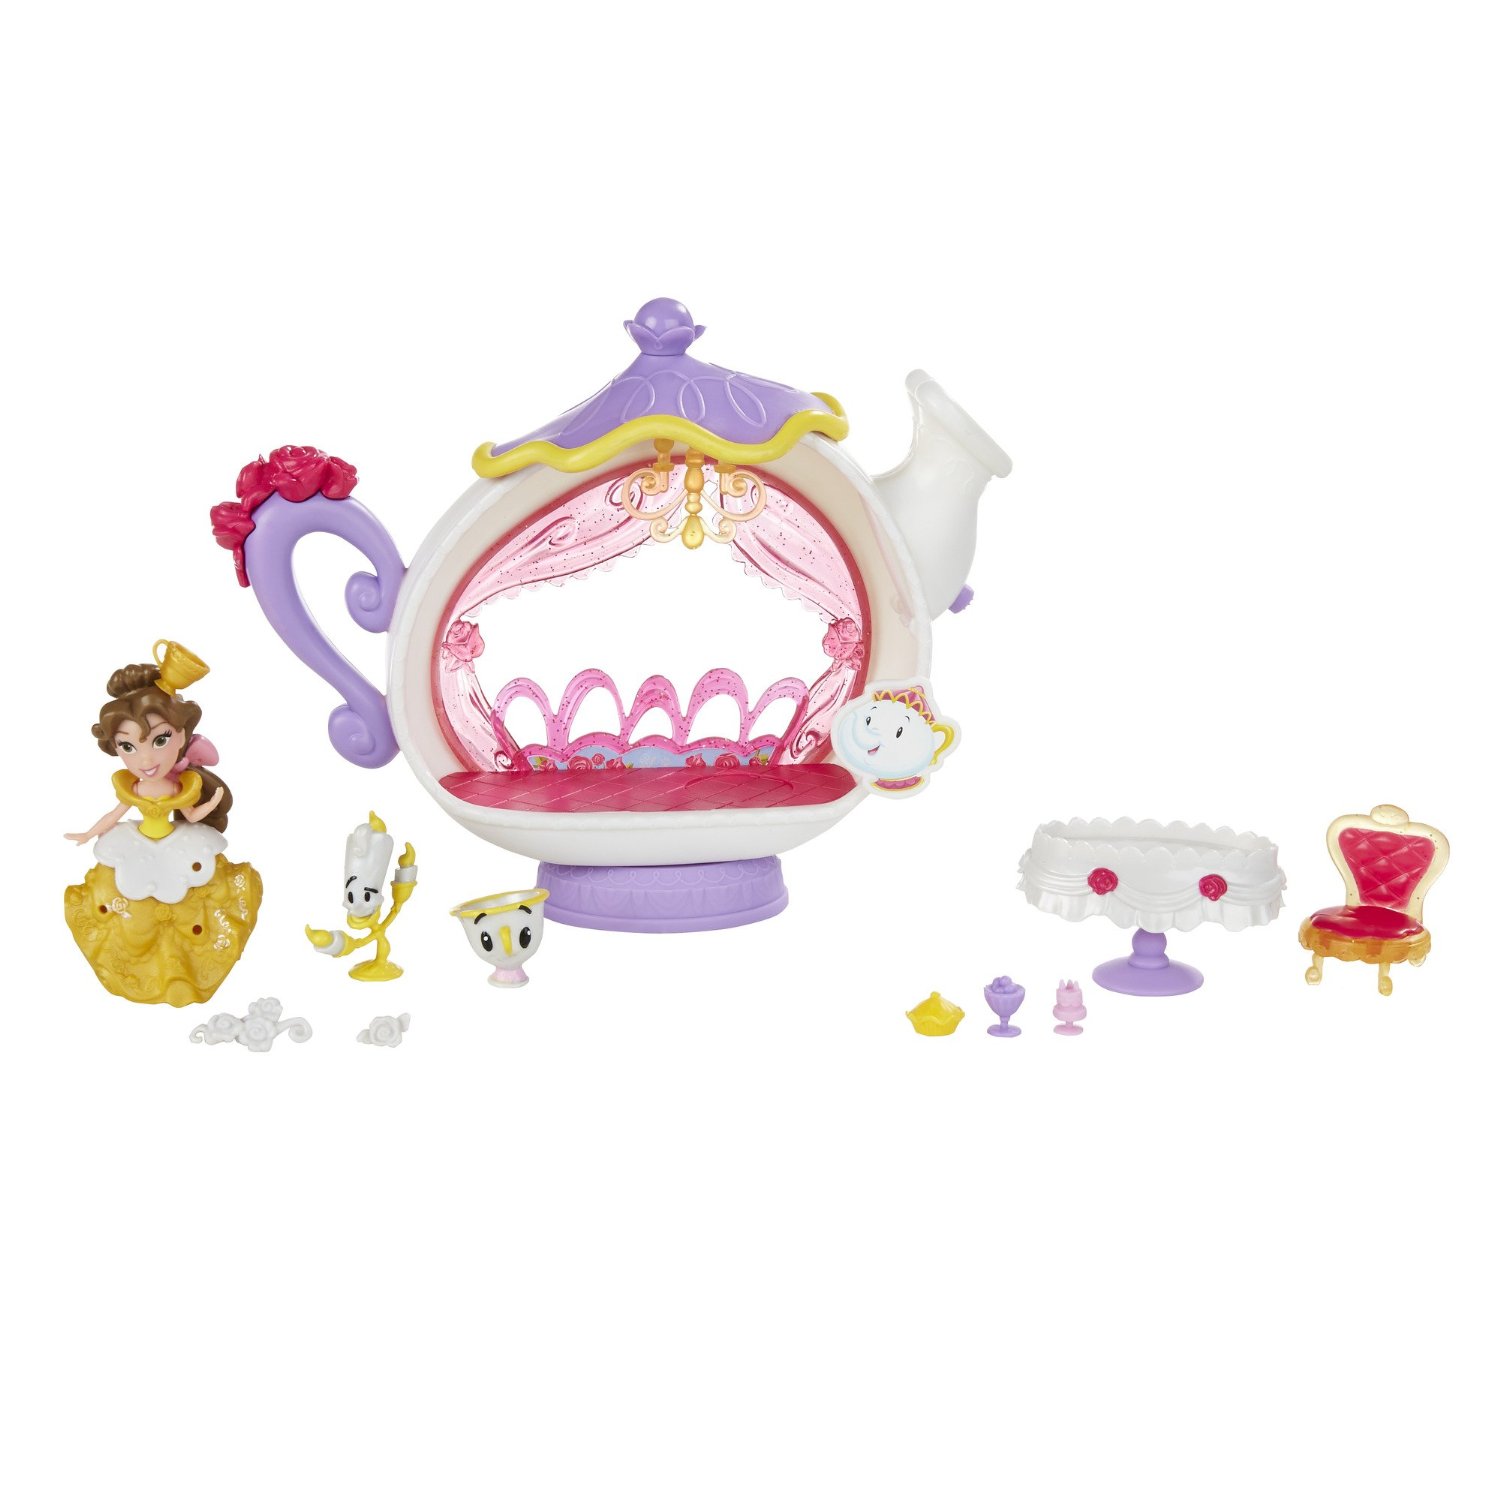 Disney Princess Little Kingdom Belle’s Enchanted Dining Room Set – Just $9.98!